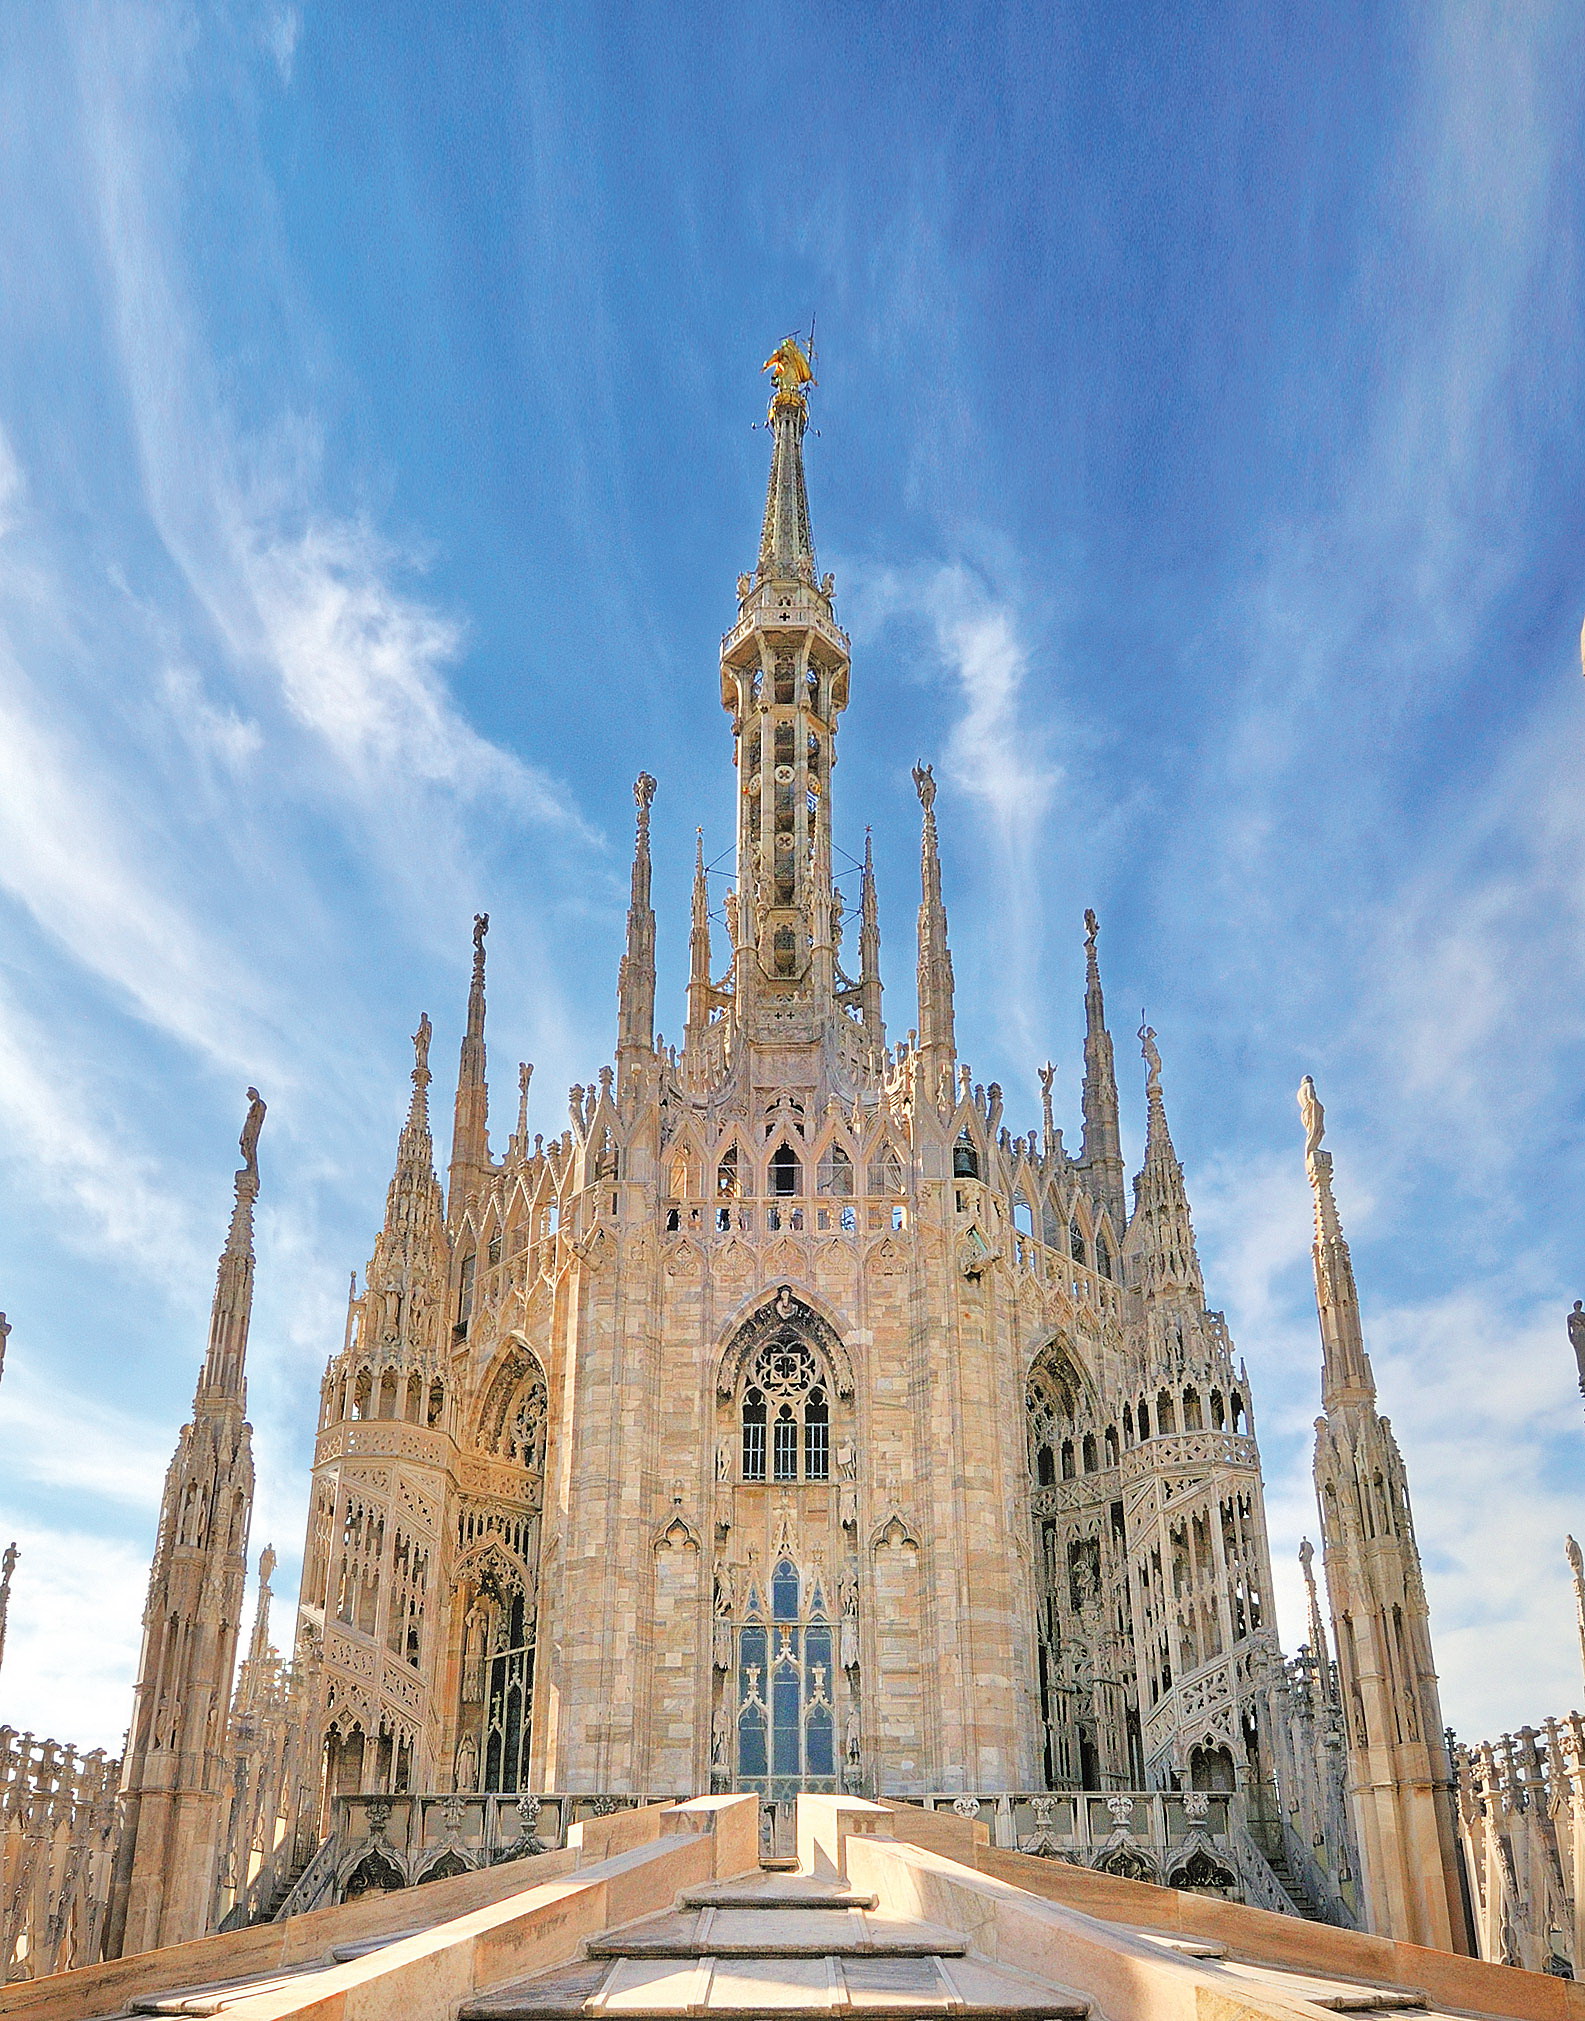 Riapertura ai turisti del Duomo di Milano. Informazioni per non cadere in una stolta mormorazione.